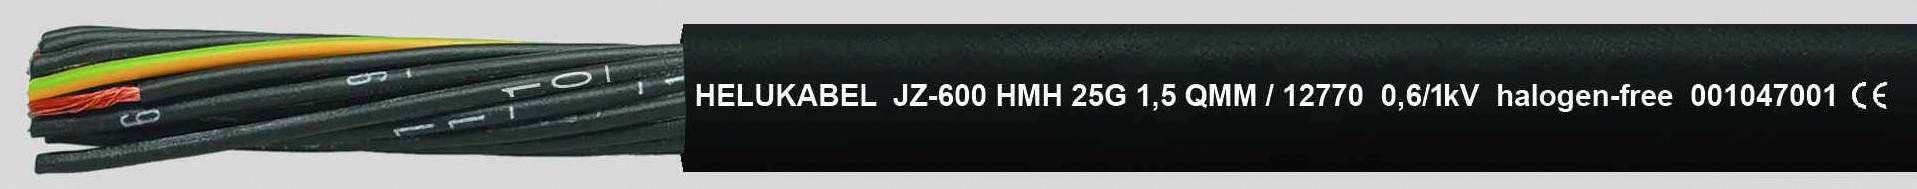 HELUKABEL HELU OZ-600 HMH 4x1,5 12763 Schwarz Steuerleitung halogenfrei